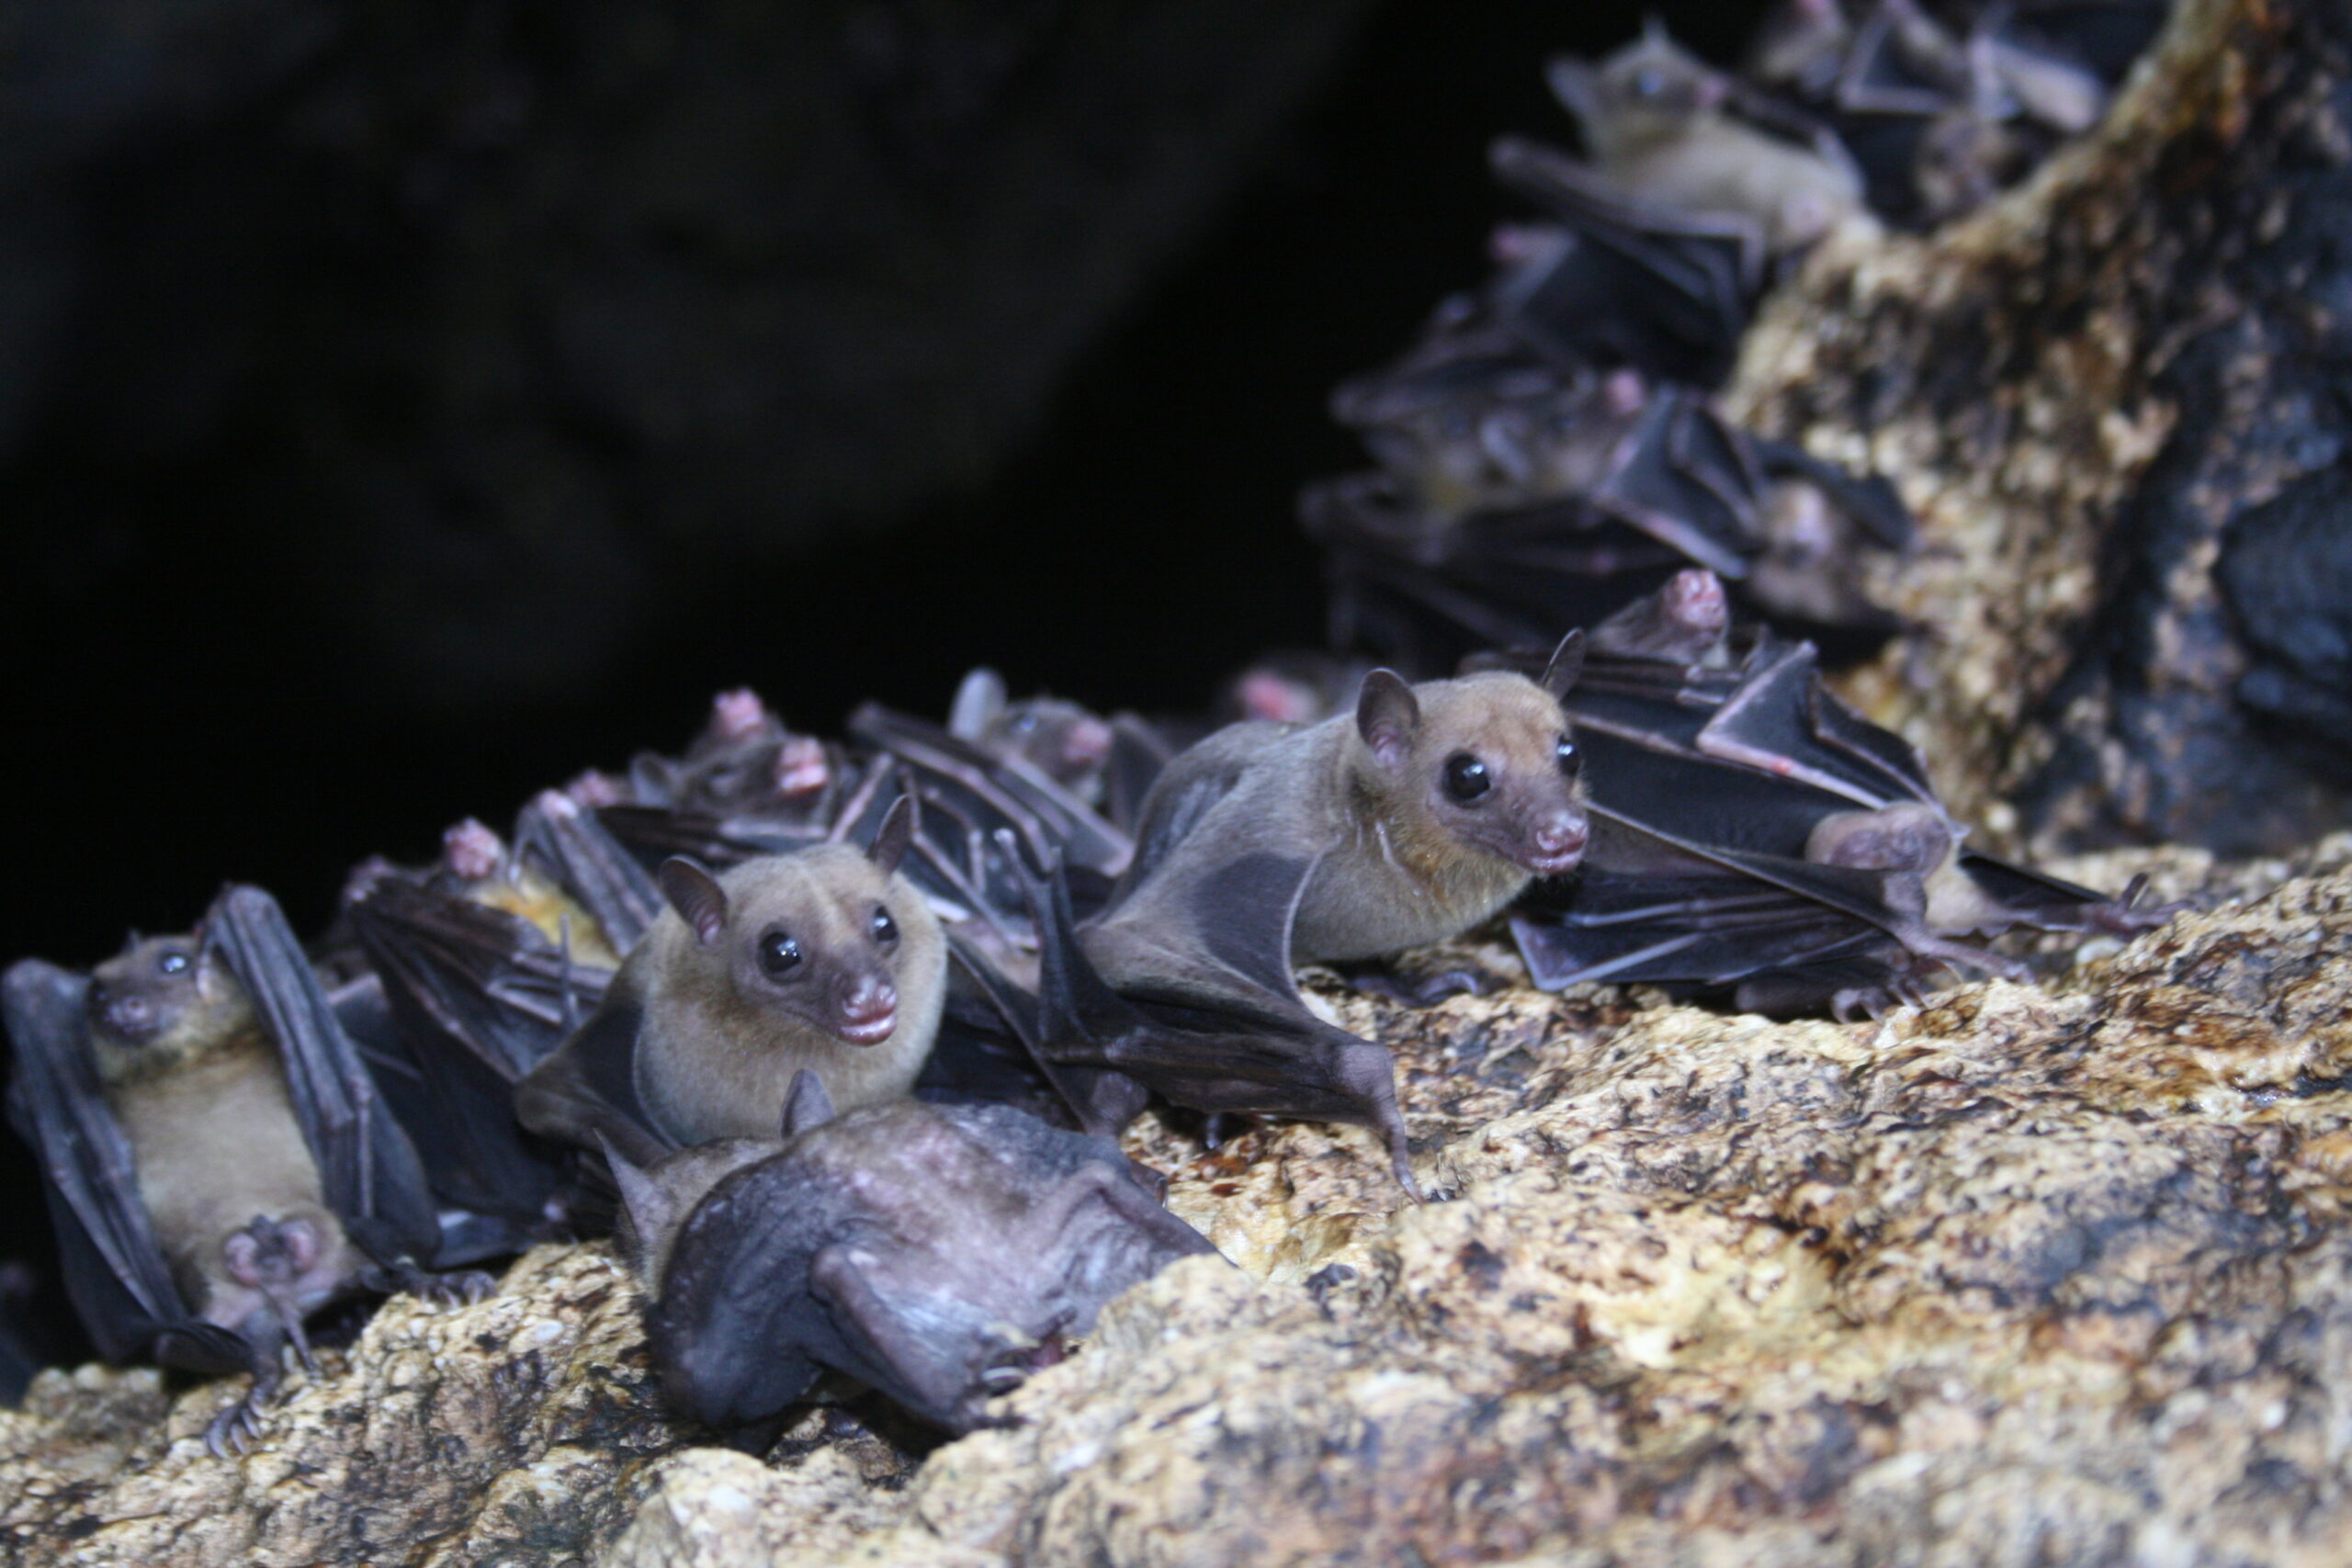 a cluster of bats